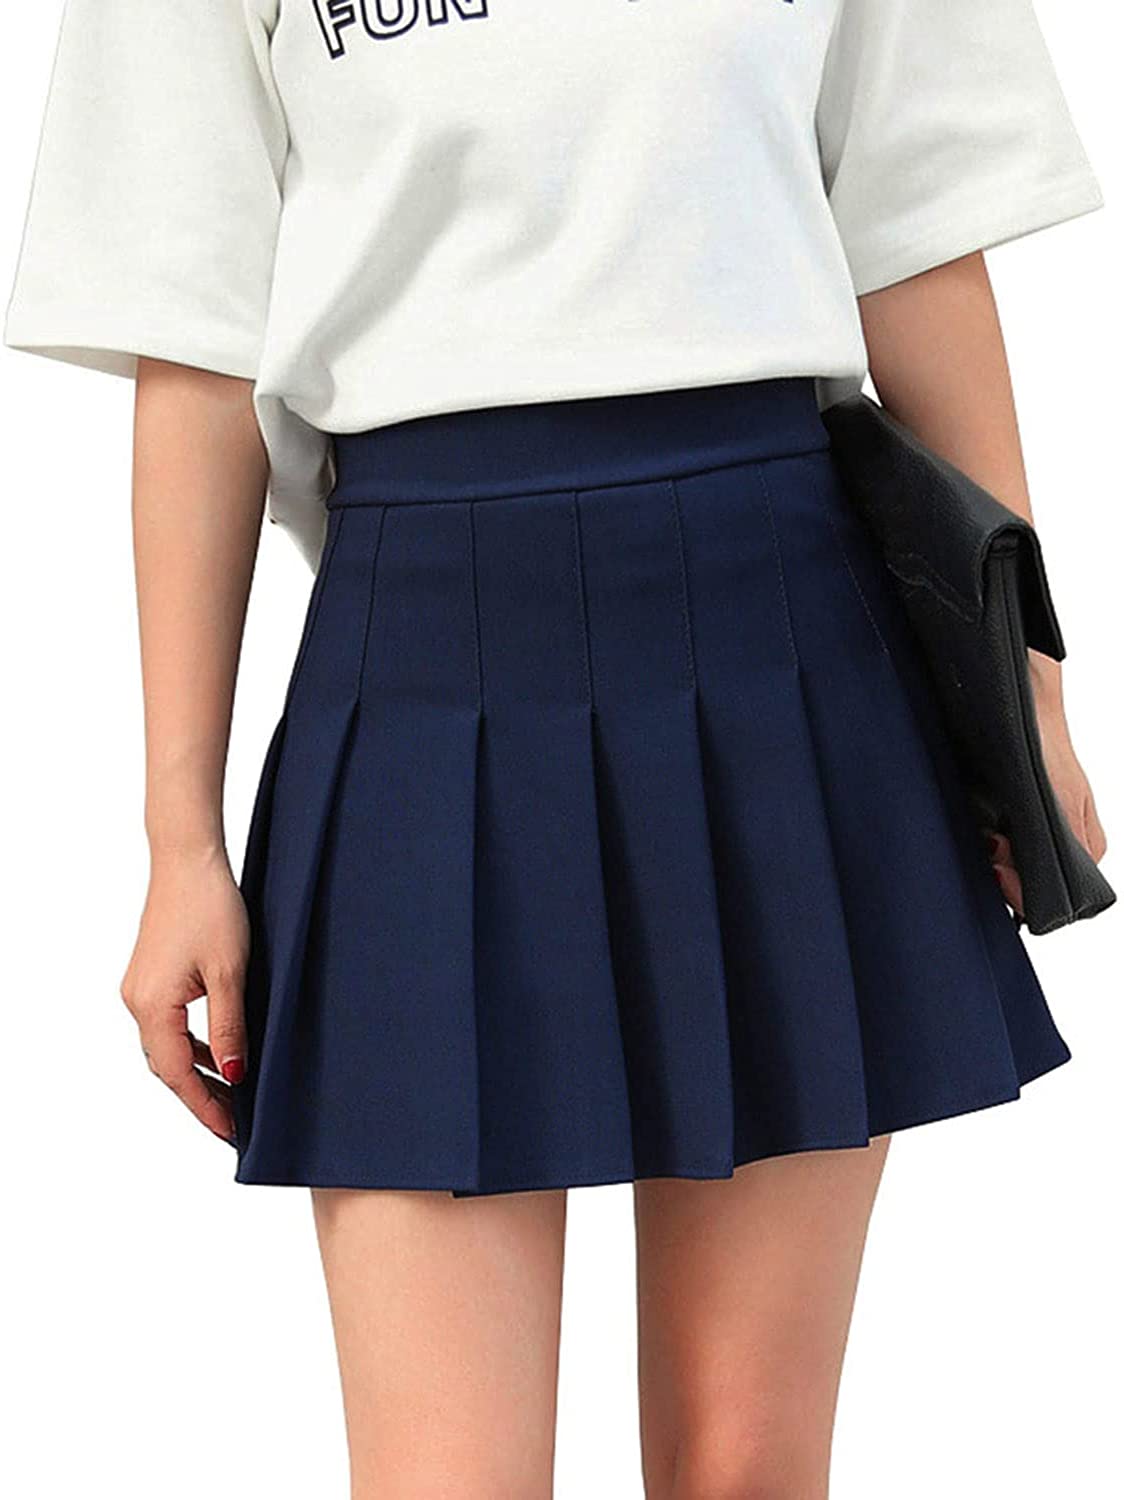 Синяя школьная юбка. Юбка Школьная. Юбка в складку. Теннисная юбка темно синяя. Теннисная юбка синяя.